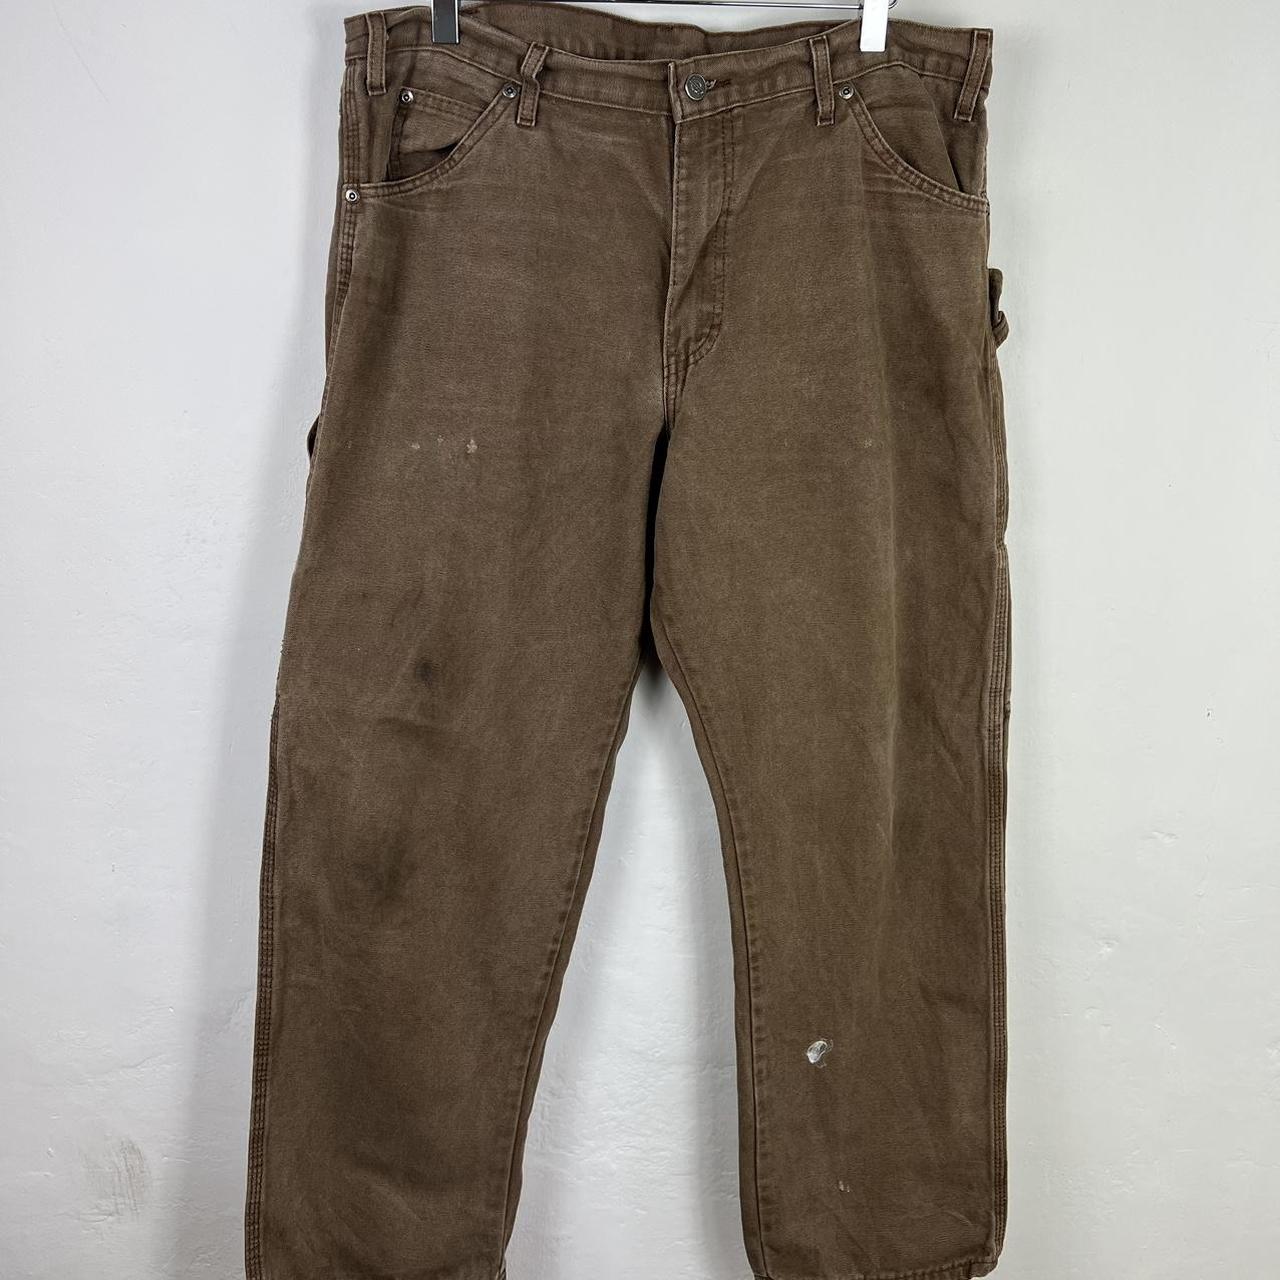 Dickies carpenter trousers 36x30